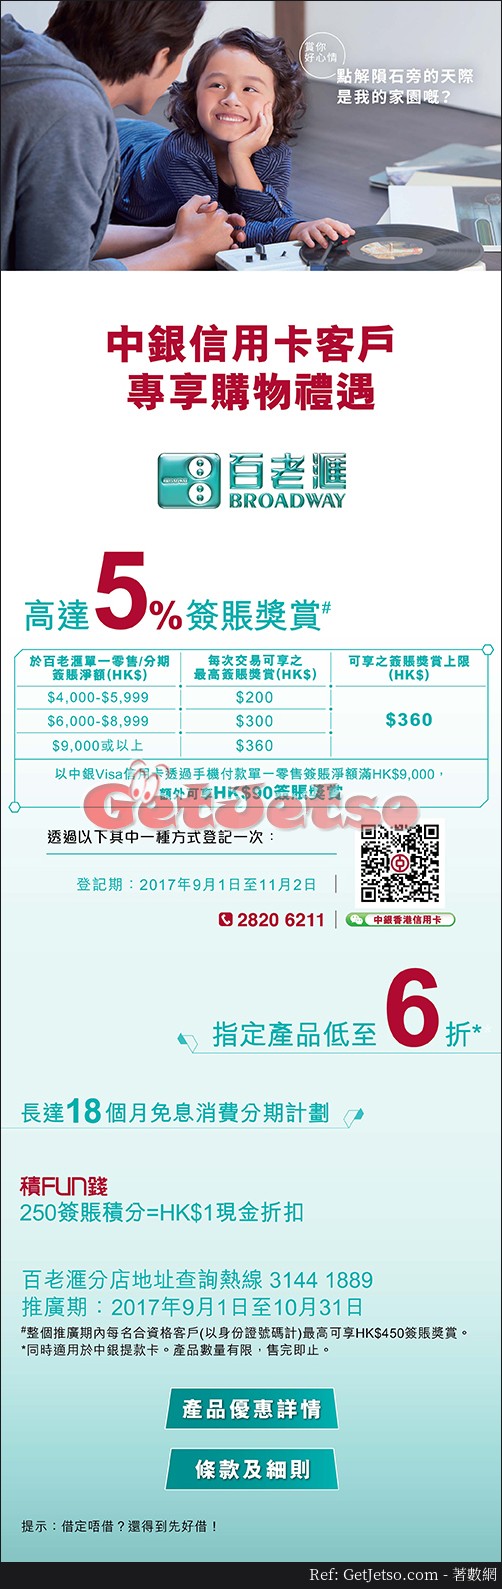 中銀信用卡享百老滙高達5%簽賬獎賞及低至6折優惠(至17年10月31日)圖片1